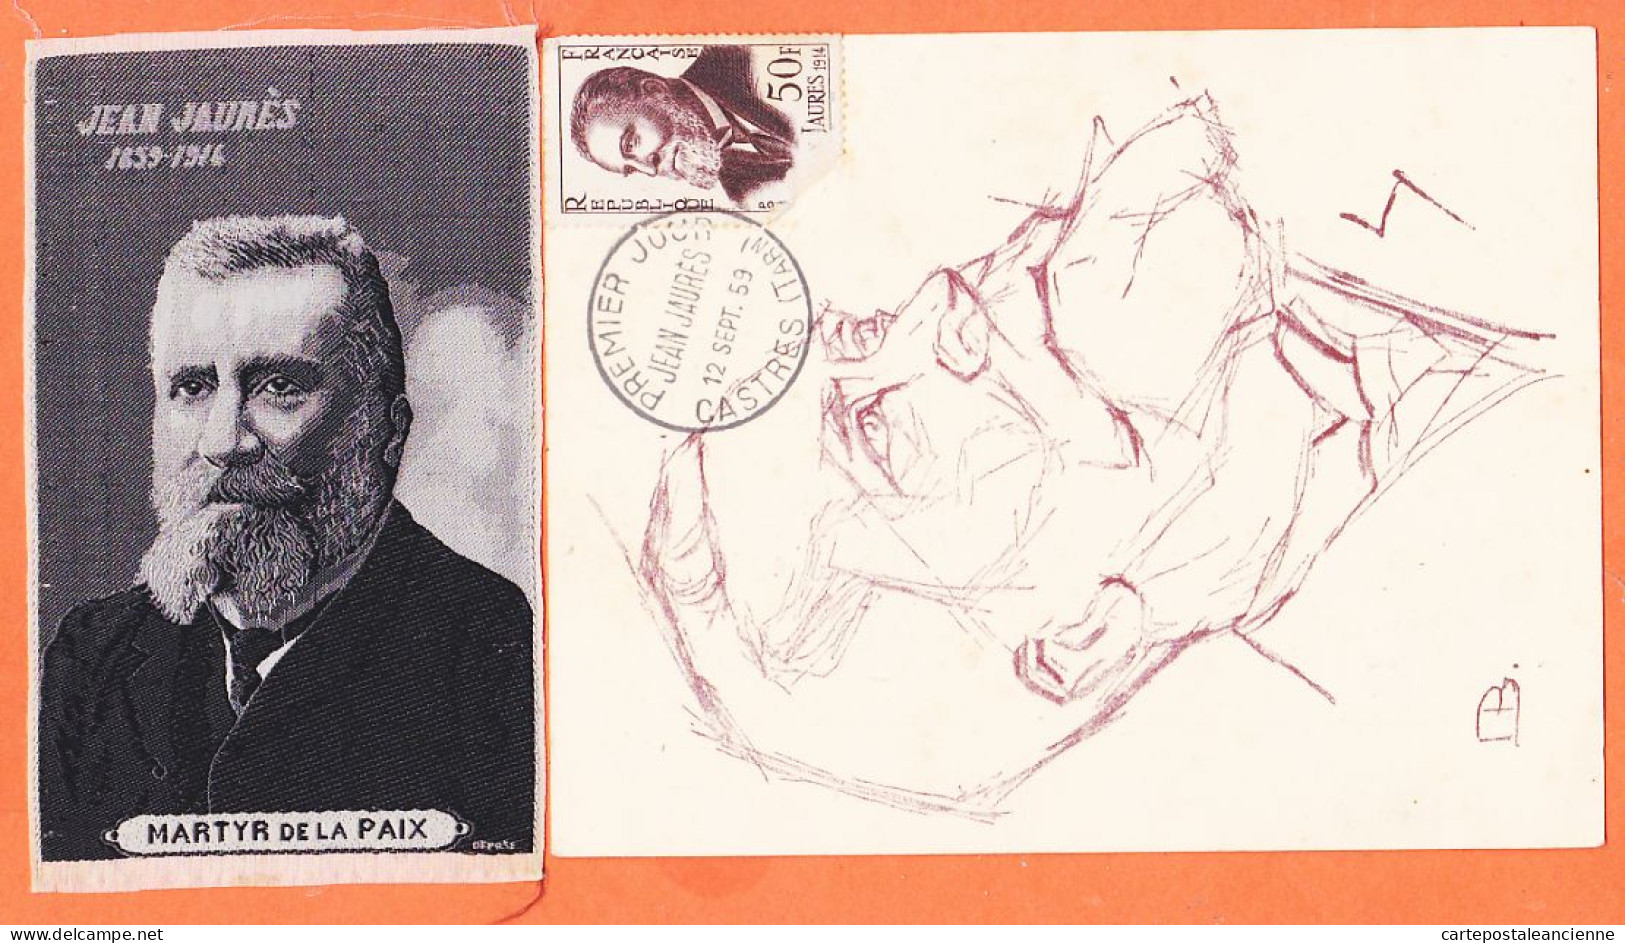 00360 ● JAURES Député SOCIALISTE Assassiné à PARIS 1859-1914 Apôtre PAIX + Portrait Tissé SOIE MARTYR 6,5x11-S.F.IO - Events